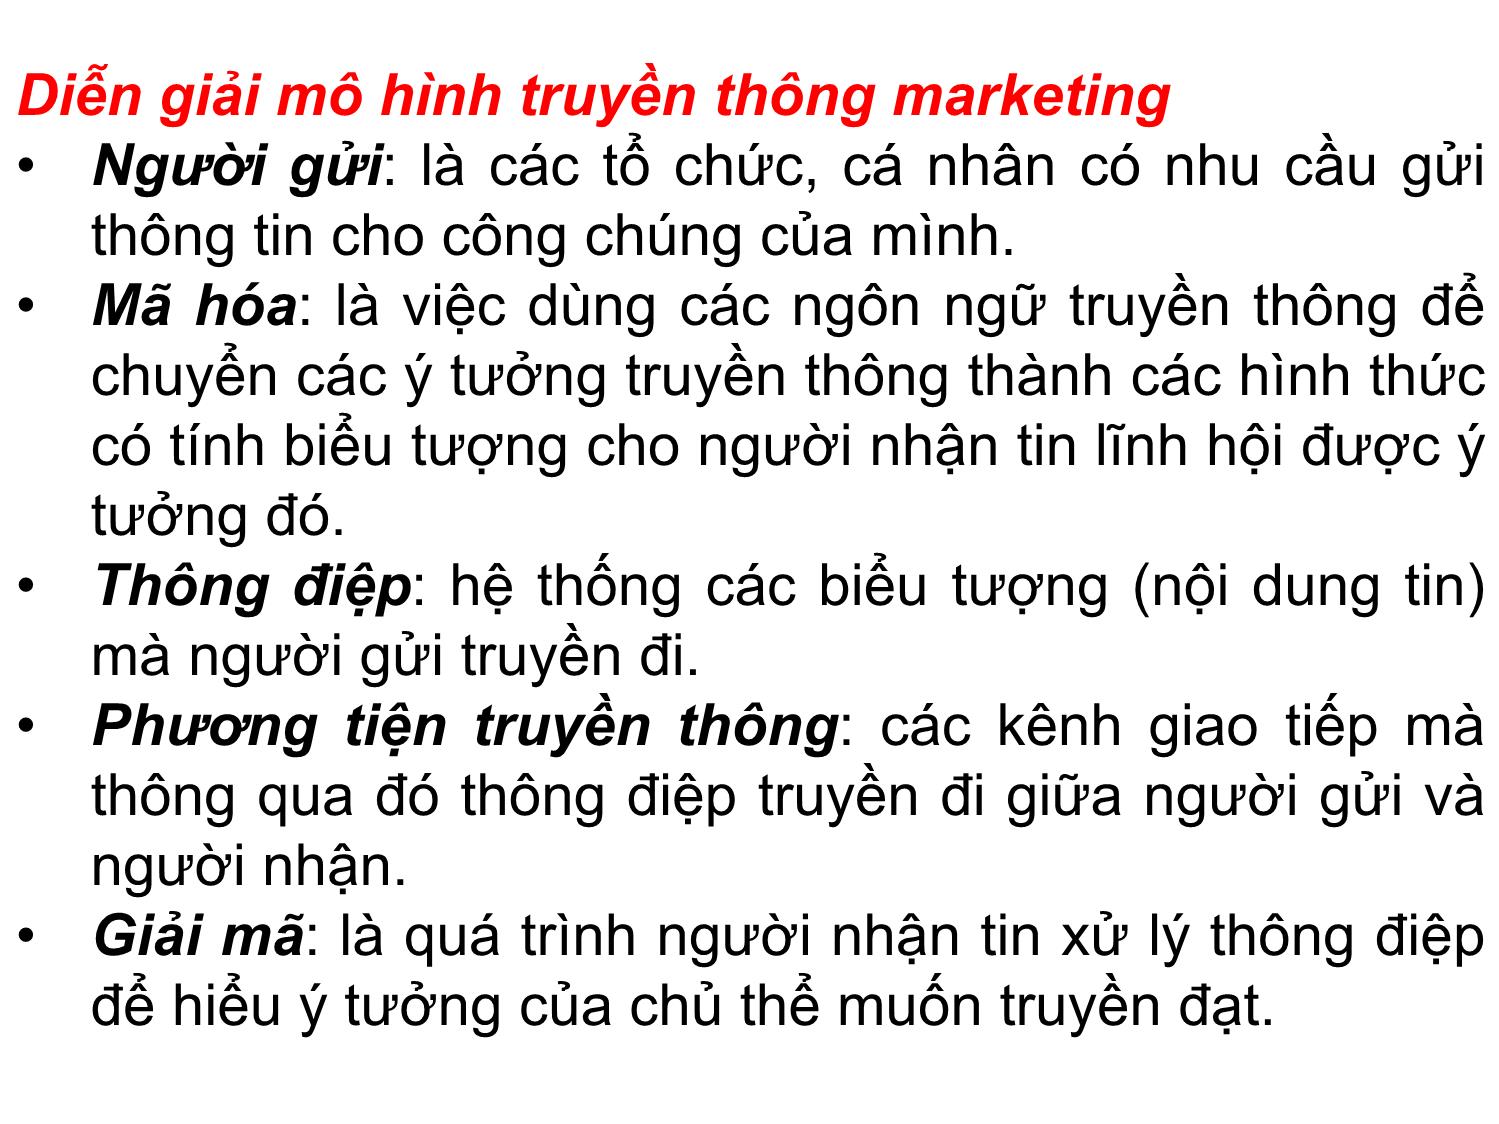 Bài giảng Quản trị marketing - Chương 9: Quản trị truyền thông marketing tích hợp (Integrated Marketing Communications - IMC) - Nguyễn Thị Phương Dung trang 9